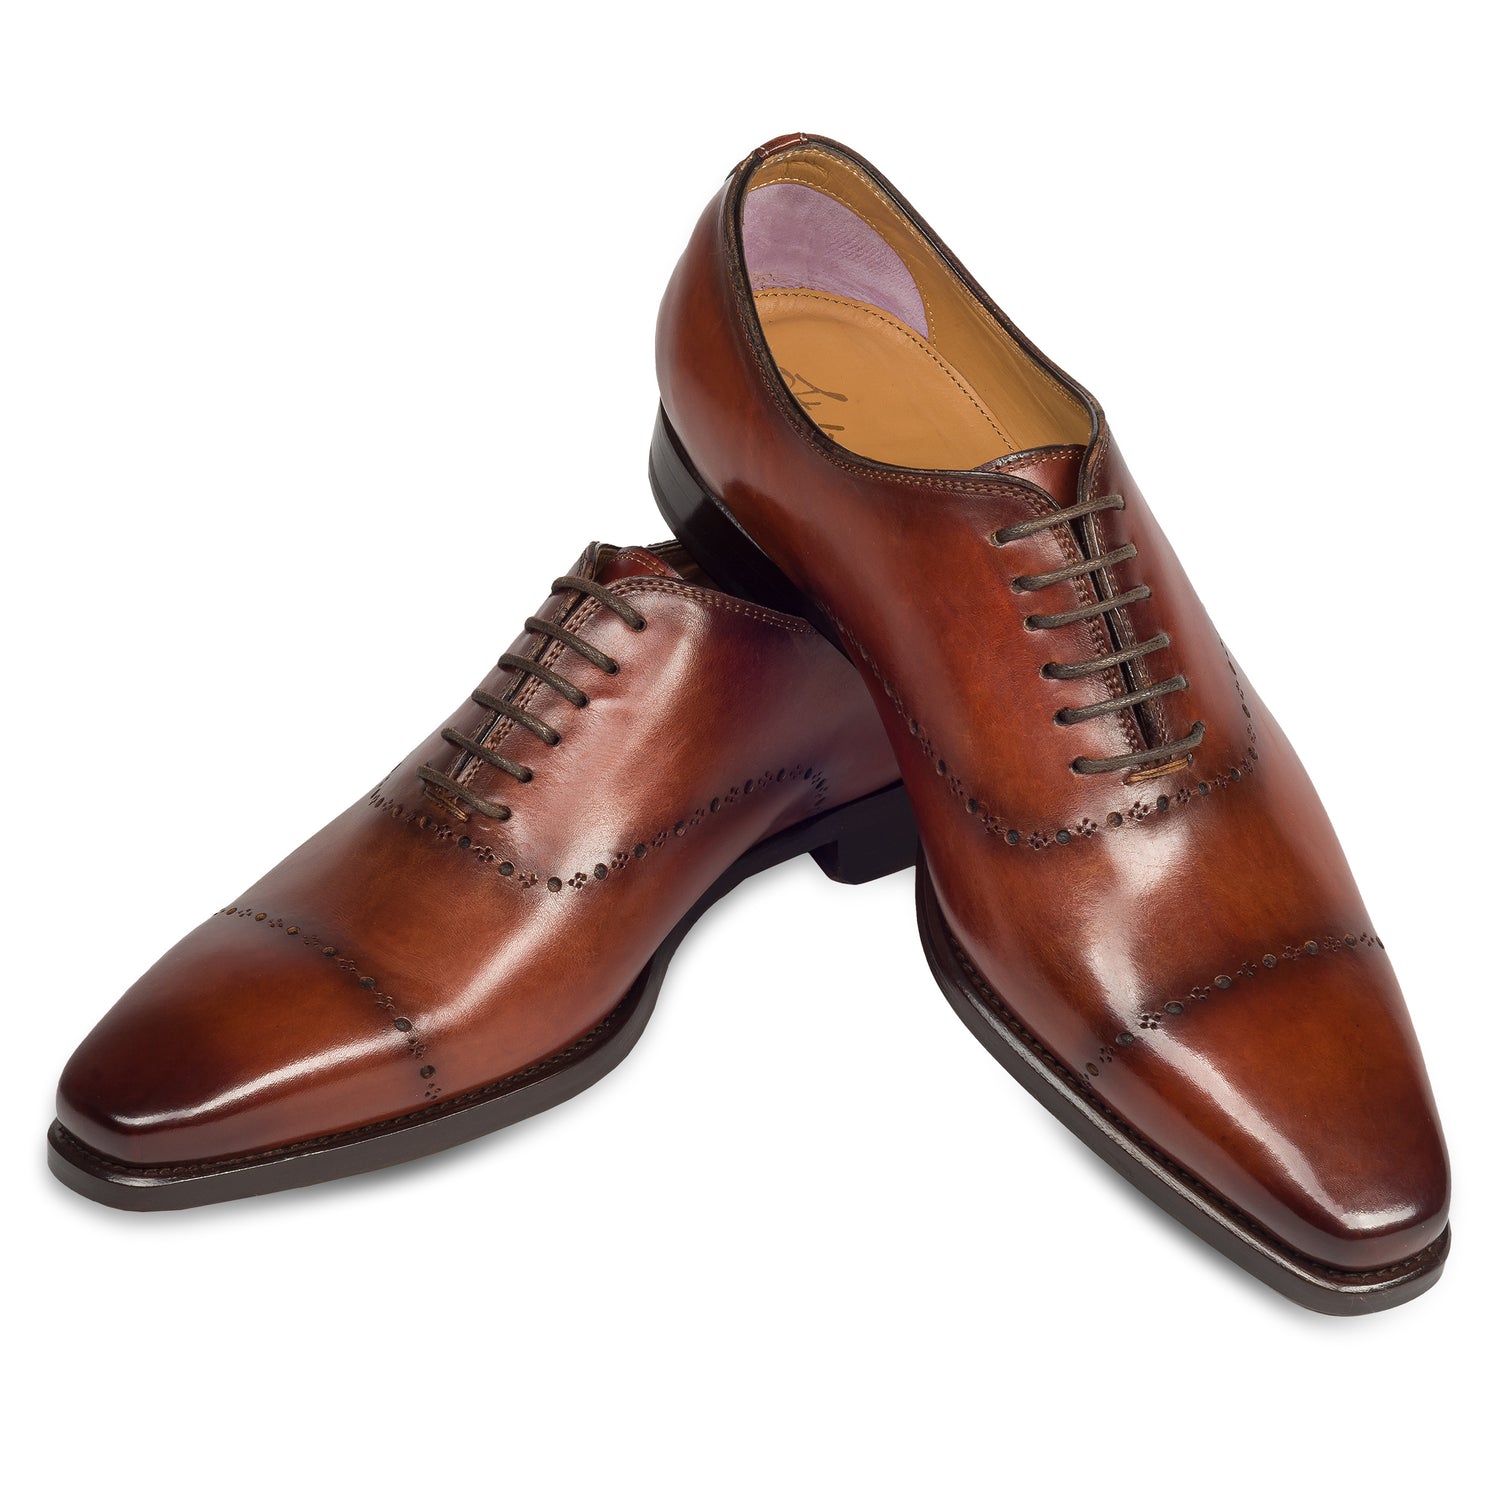 Branchini - Italienische Herren Anzugschuhe Oxford in braun. Aus Kalbsleder handgefertigt und durchgenäht. Paarweise Ansicht Schuhe überkreuzt aufgestellt.